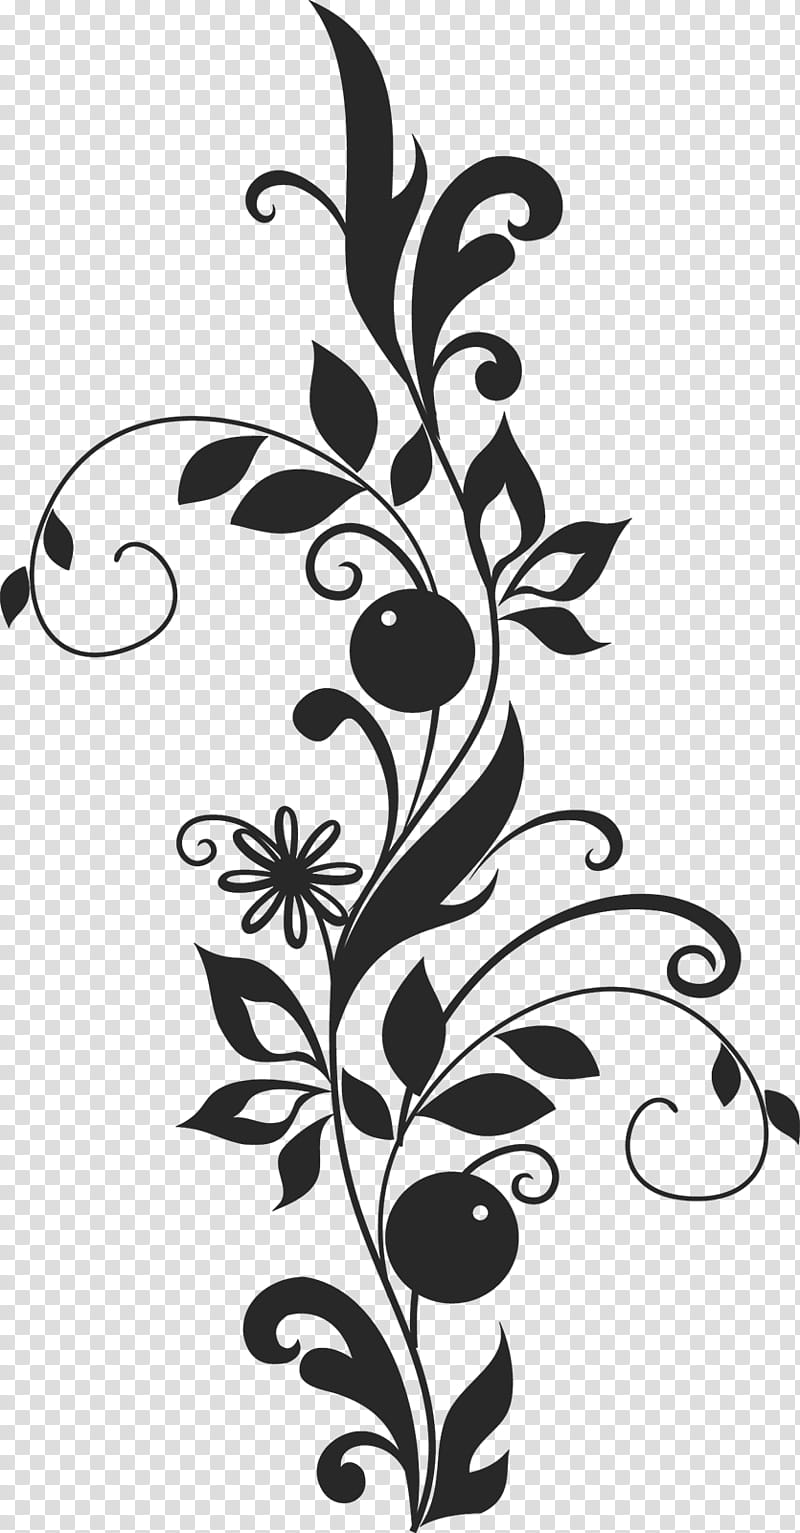 flower border flower background floral line, Blackandwhite, Leaf, Branch, Plant, Stencil, Pedicel transparent background PNG clipart